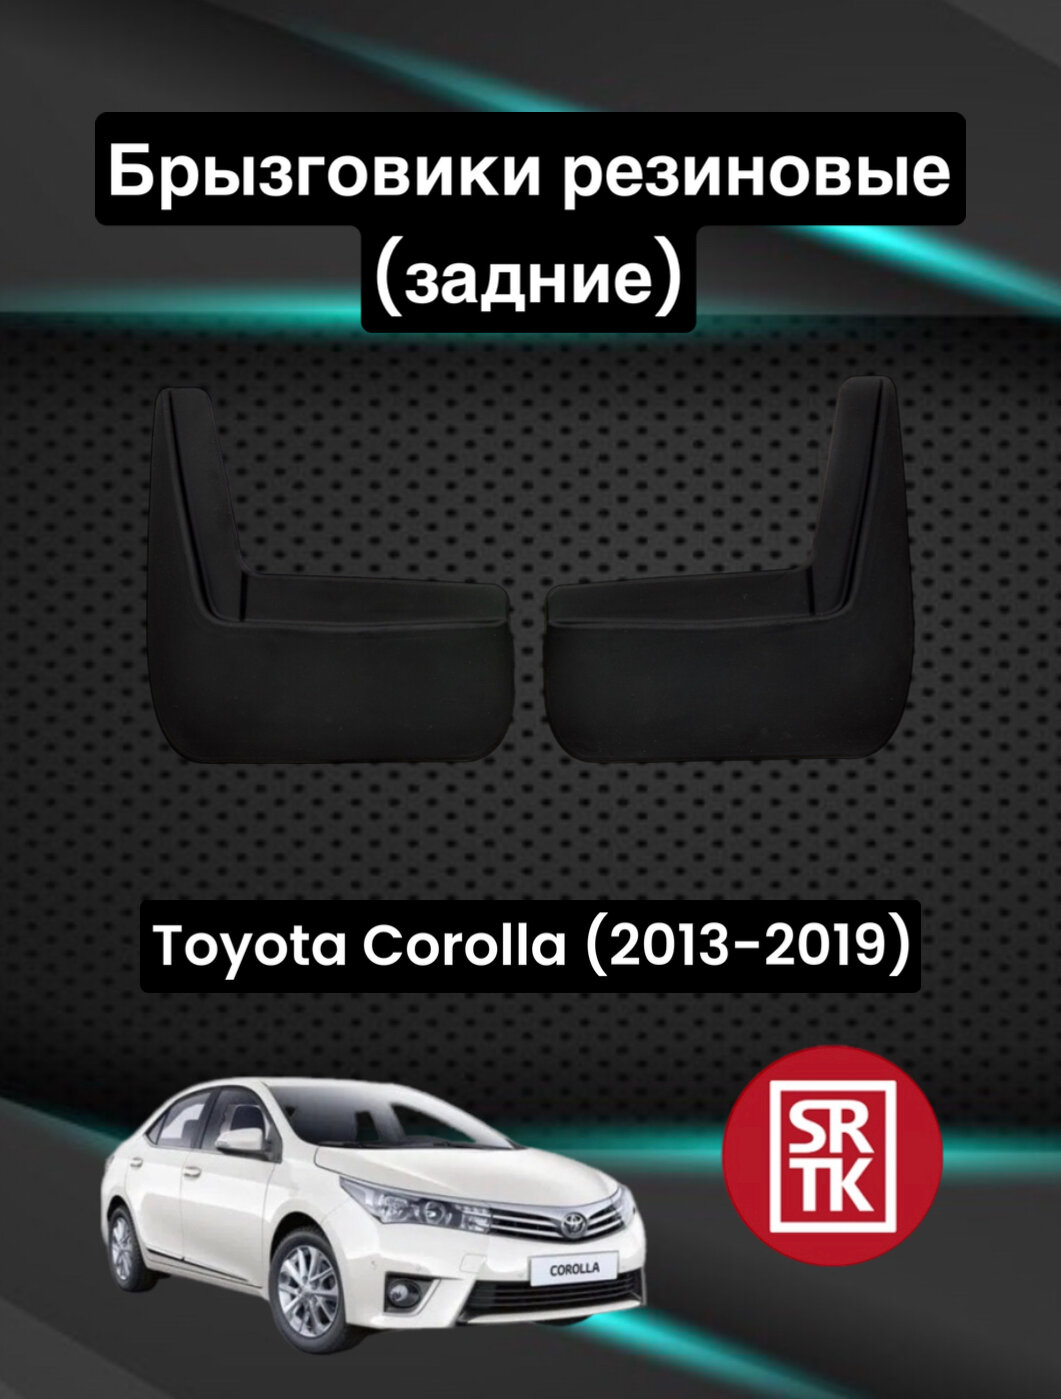 Брызговики резиновые для Тойота Королла /Toyota Corolla/(2013-2019) SRTK, задние